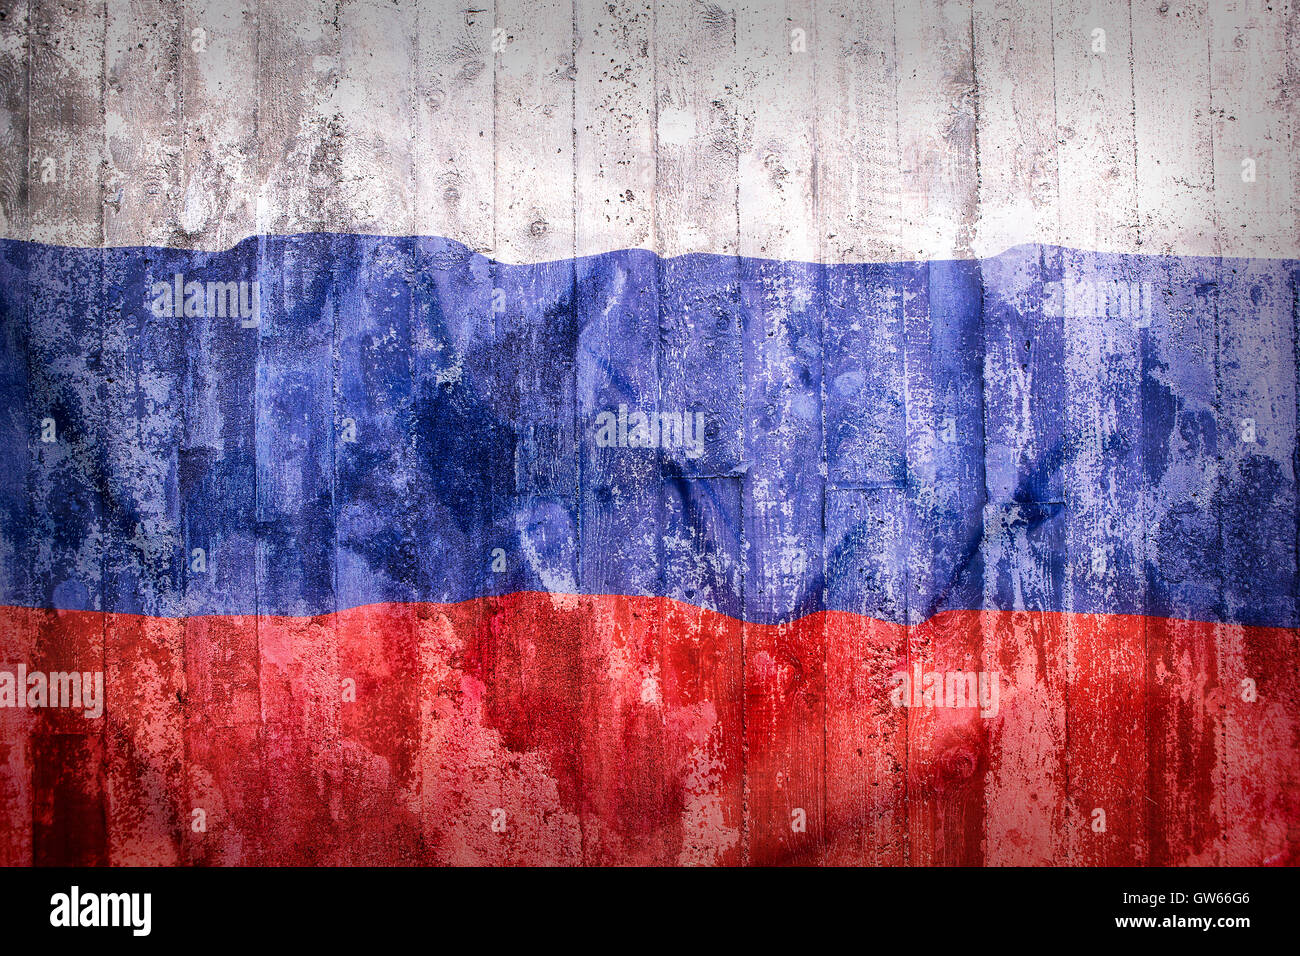 Russland-flagge realistische nationalflagge der russischen